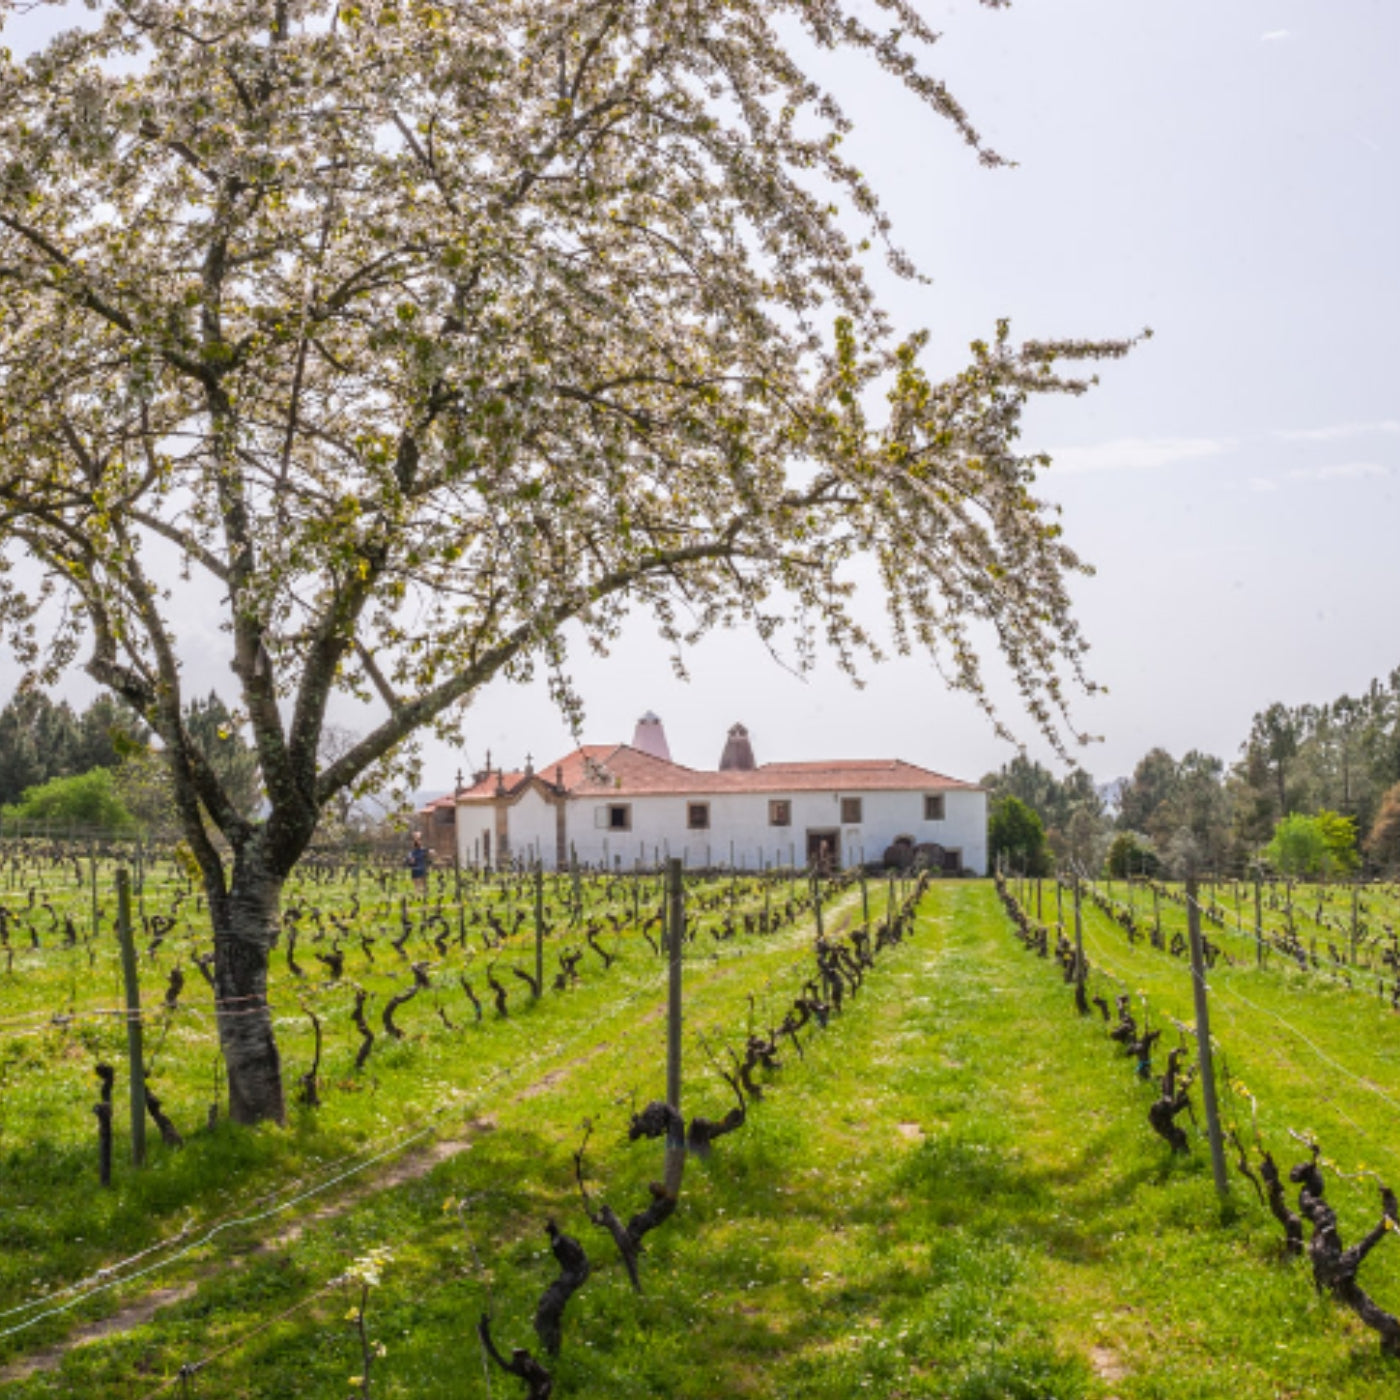 Bild vom Weingut Quinta de Saes aus der bezaubernden Dão-Region, idyllische Landschaft. Weingut mit einer Wiese und Weinreben, im Vordergrund ein blühender Baum.